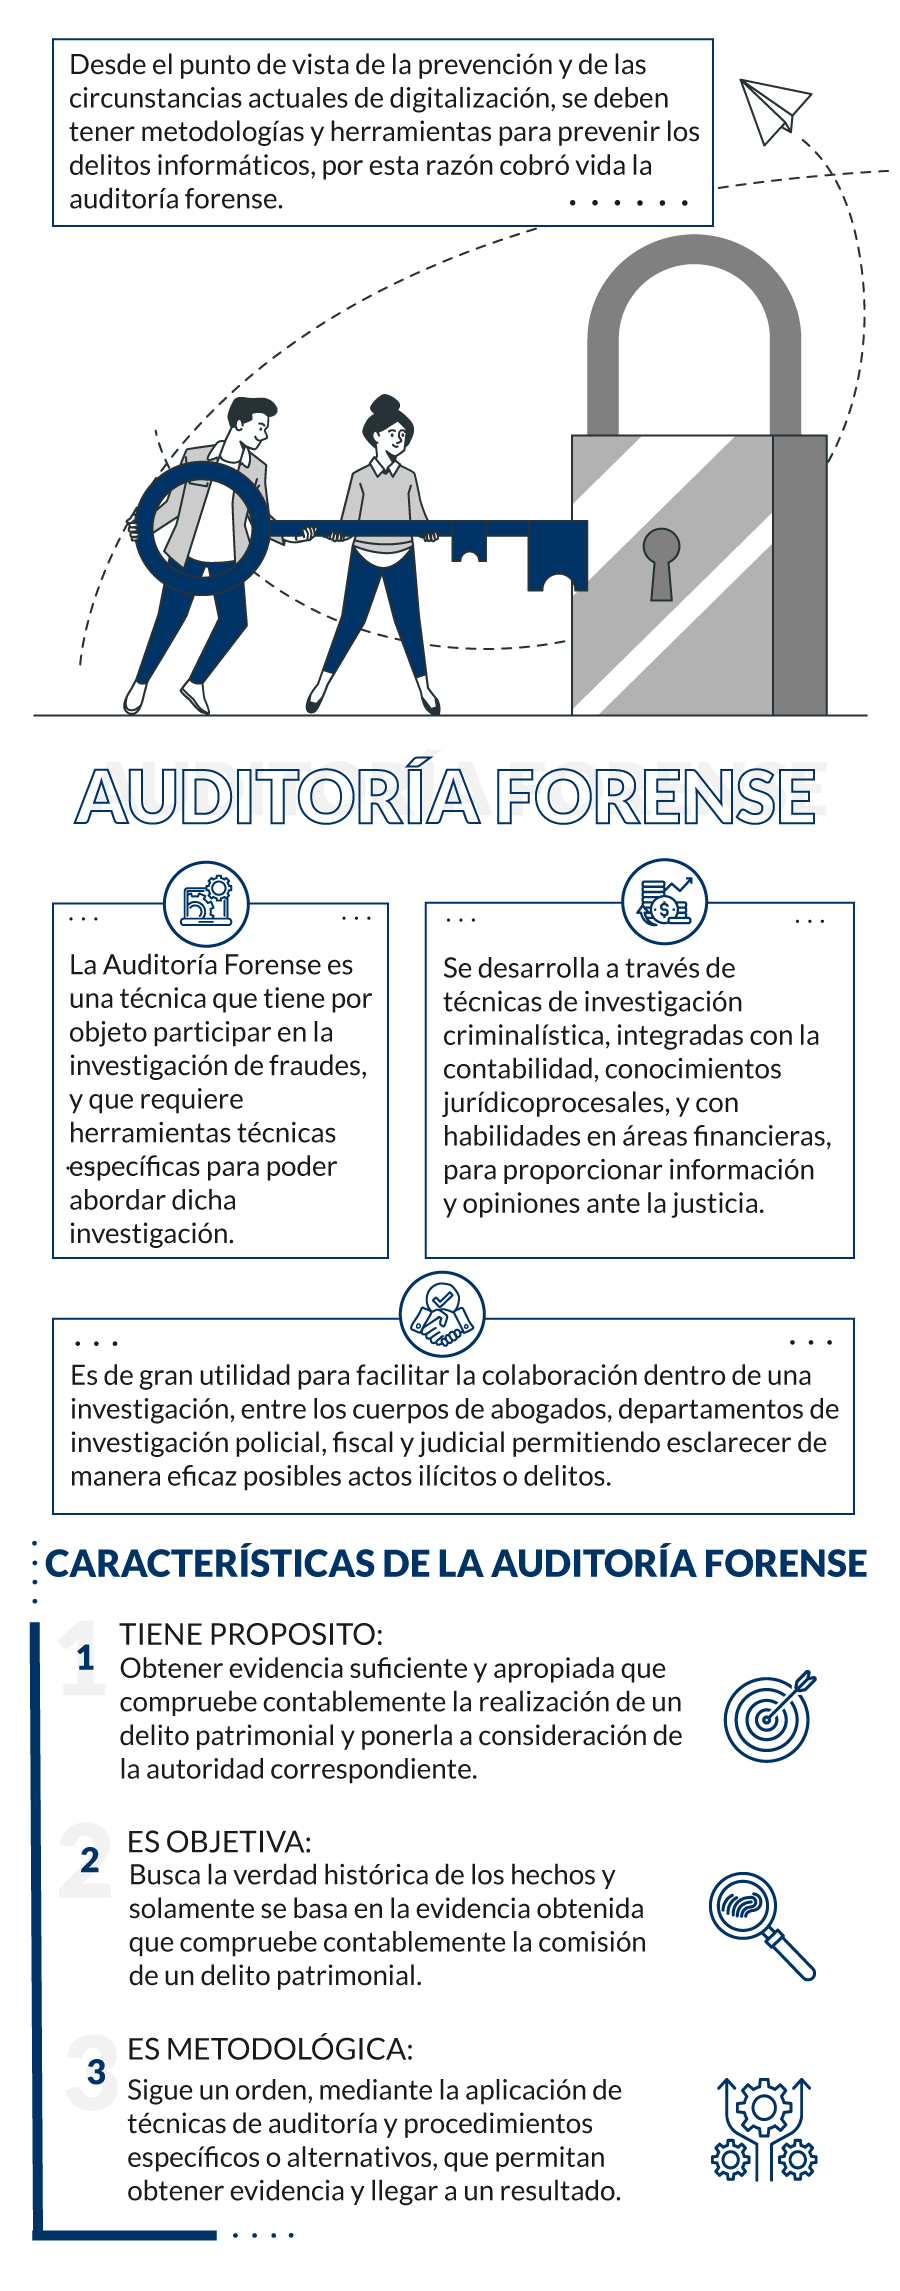 caracteristicas de auditoria forense